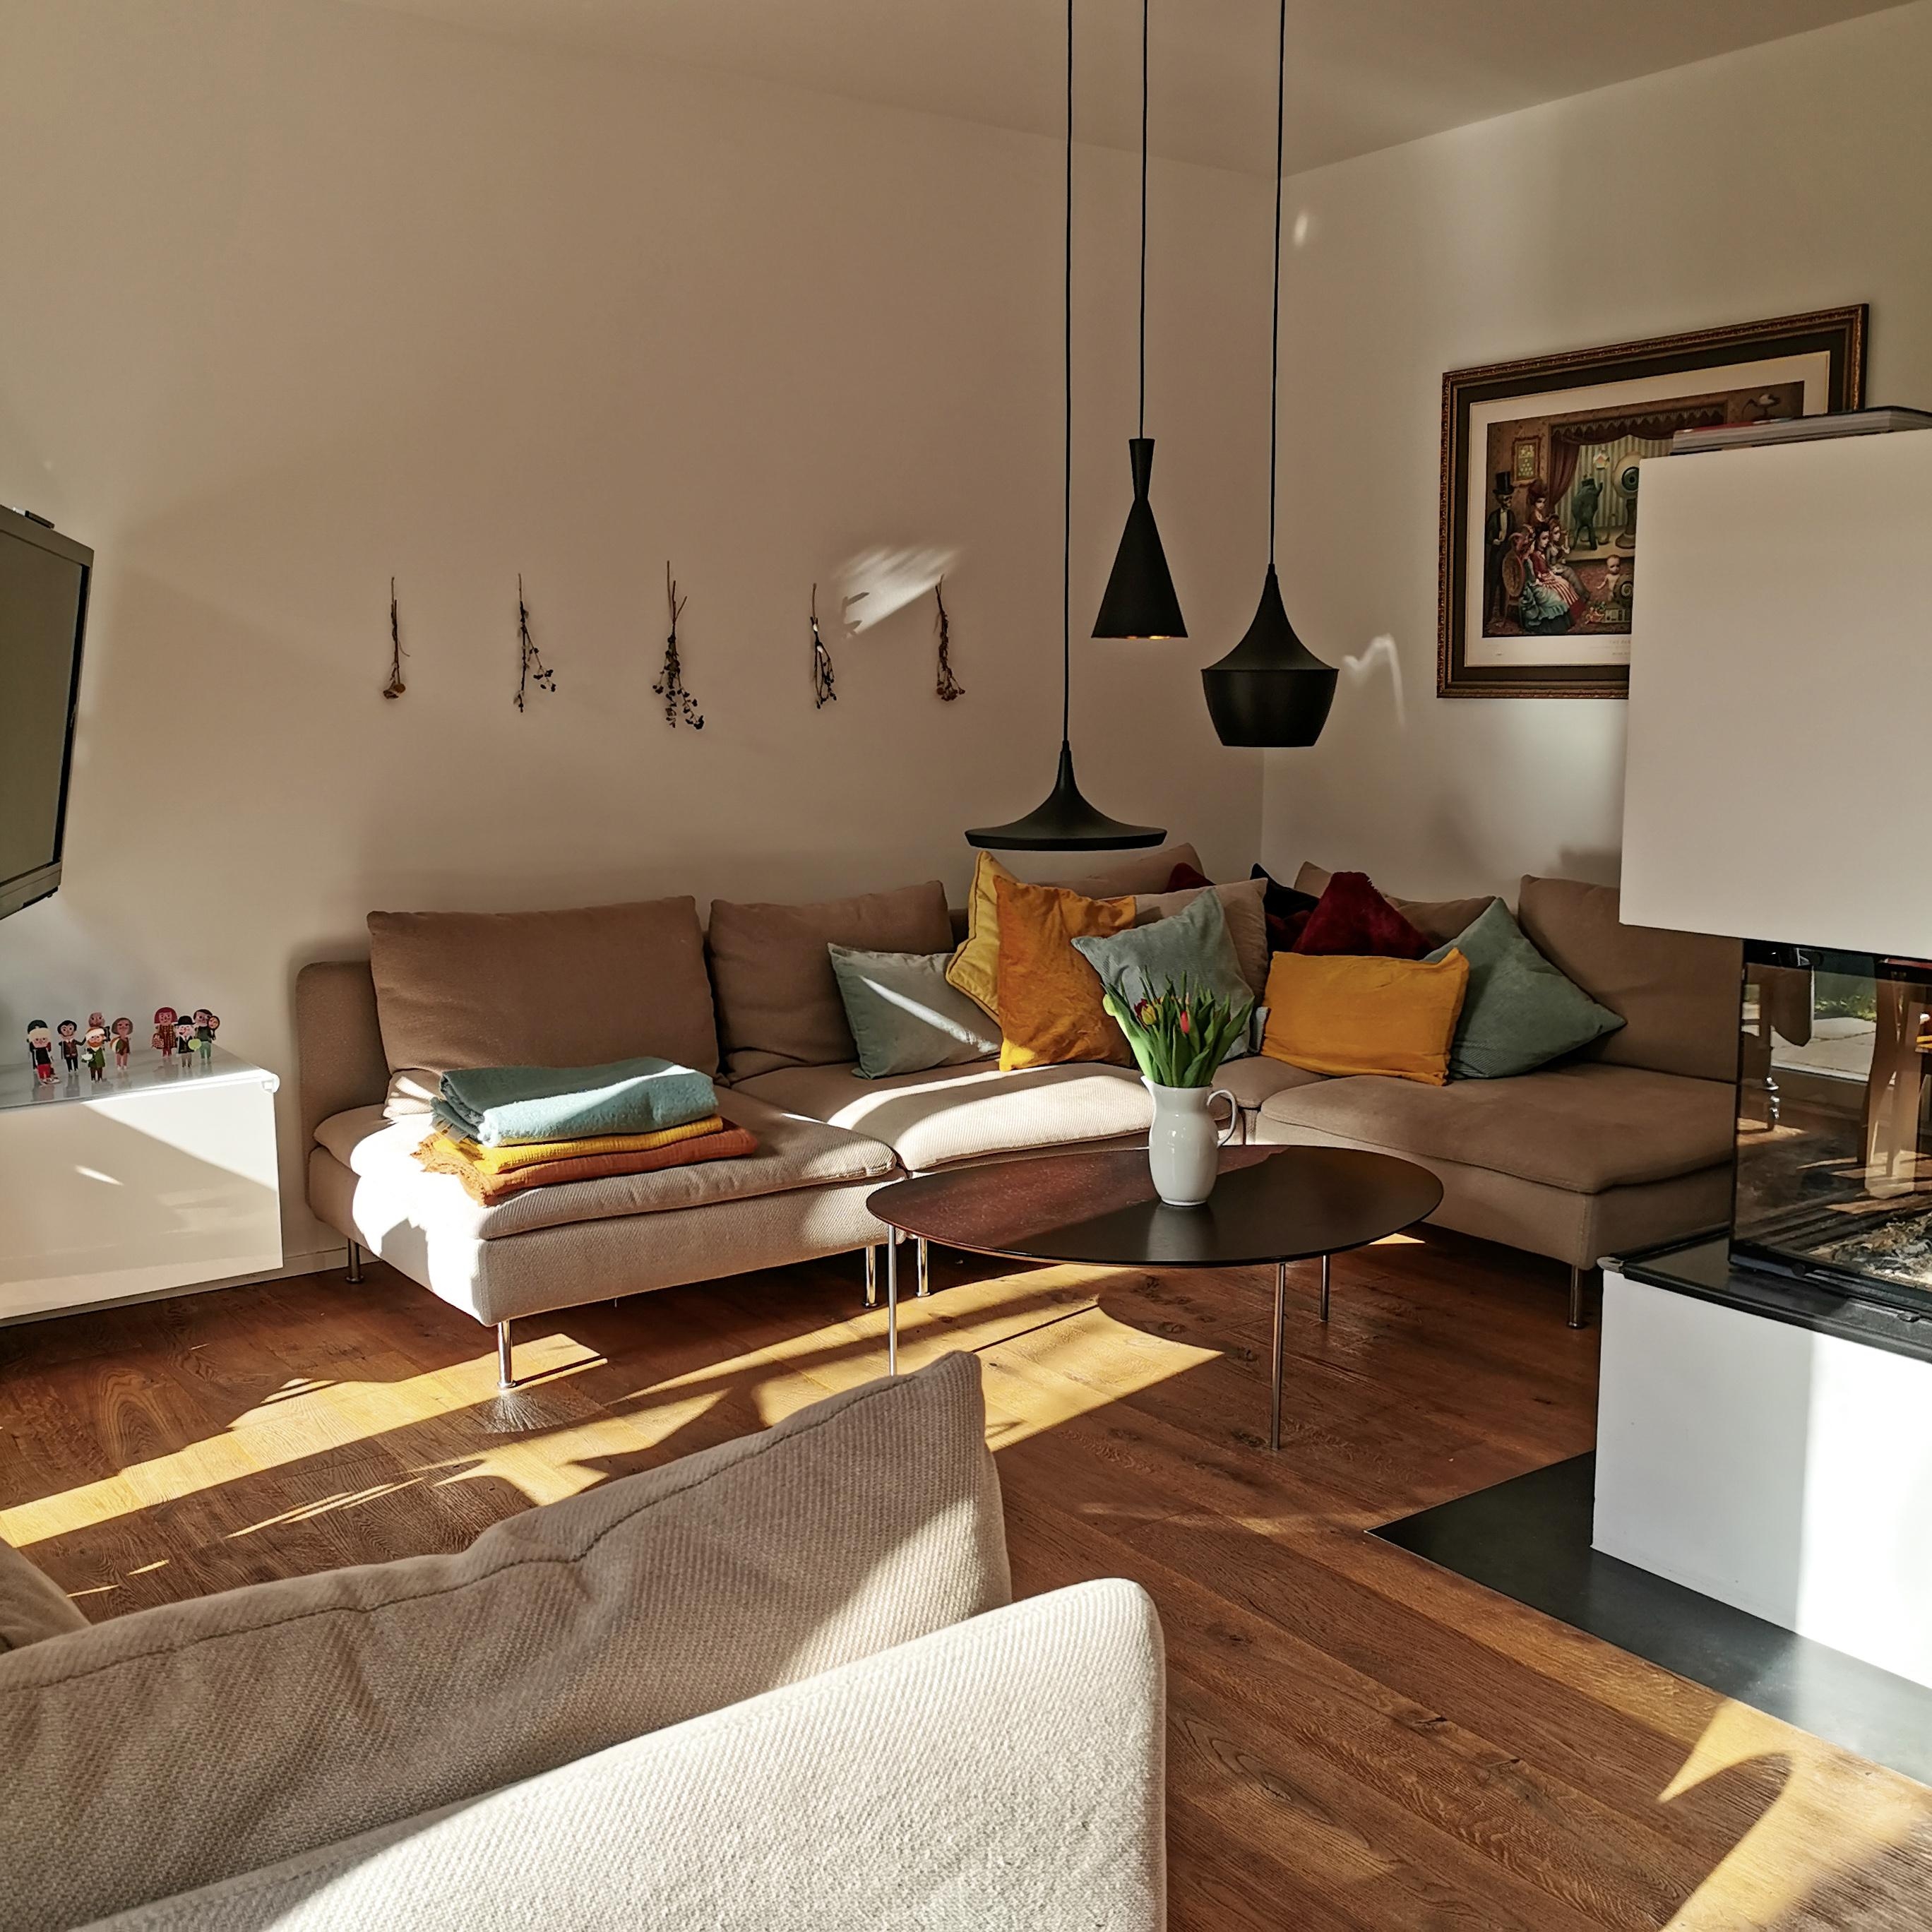 Lass' die ☀️ in dein ♥️ #livingroom #kamin #couch #sitzecke #licht #wohnzimmer #kaminecke #holzboden #ikea #kissen 